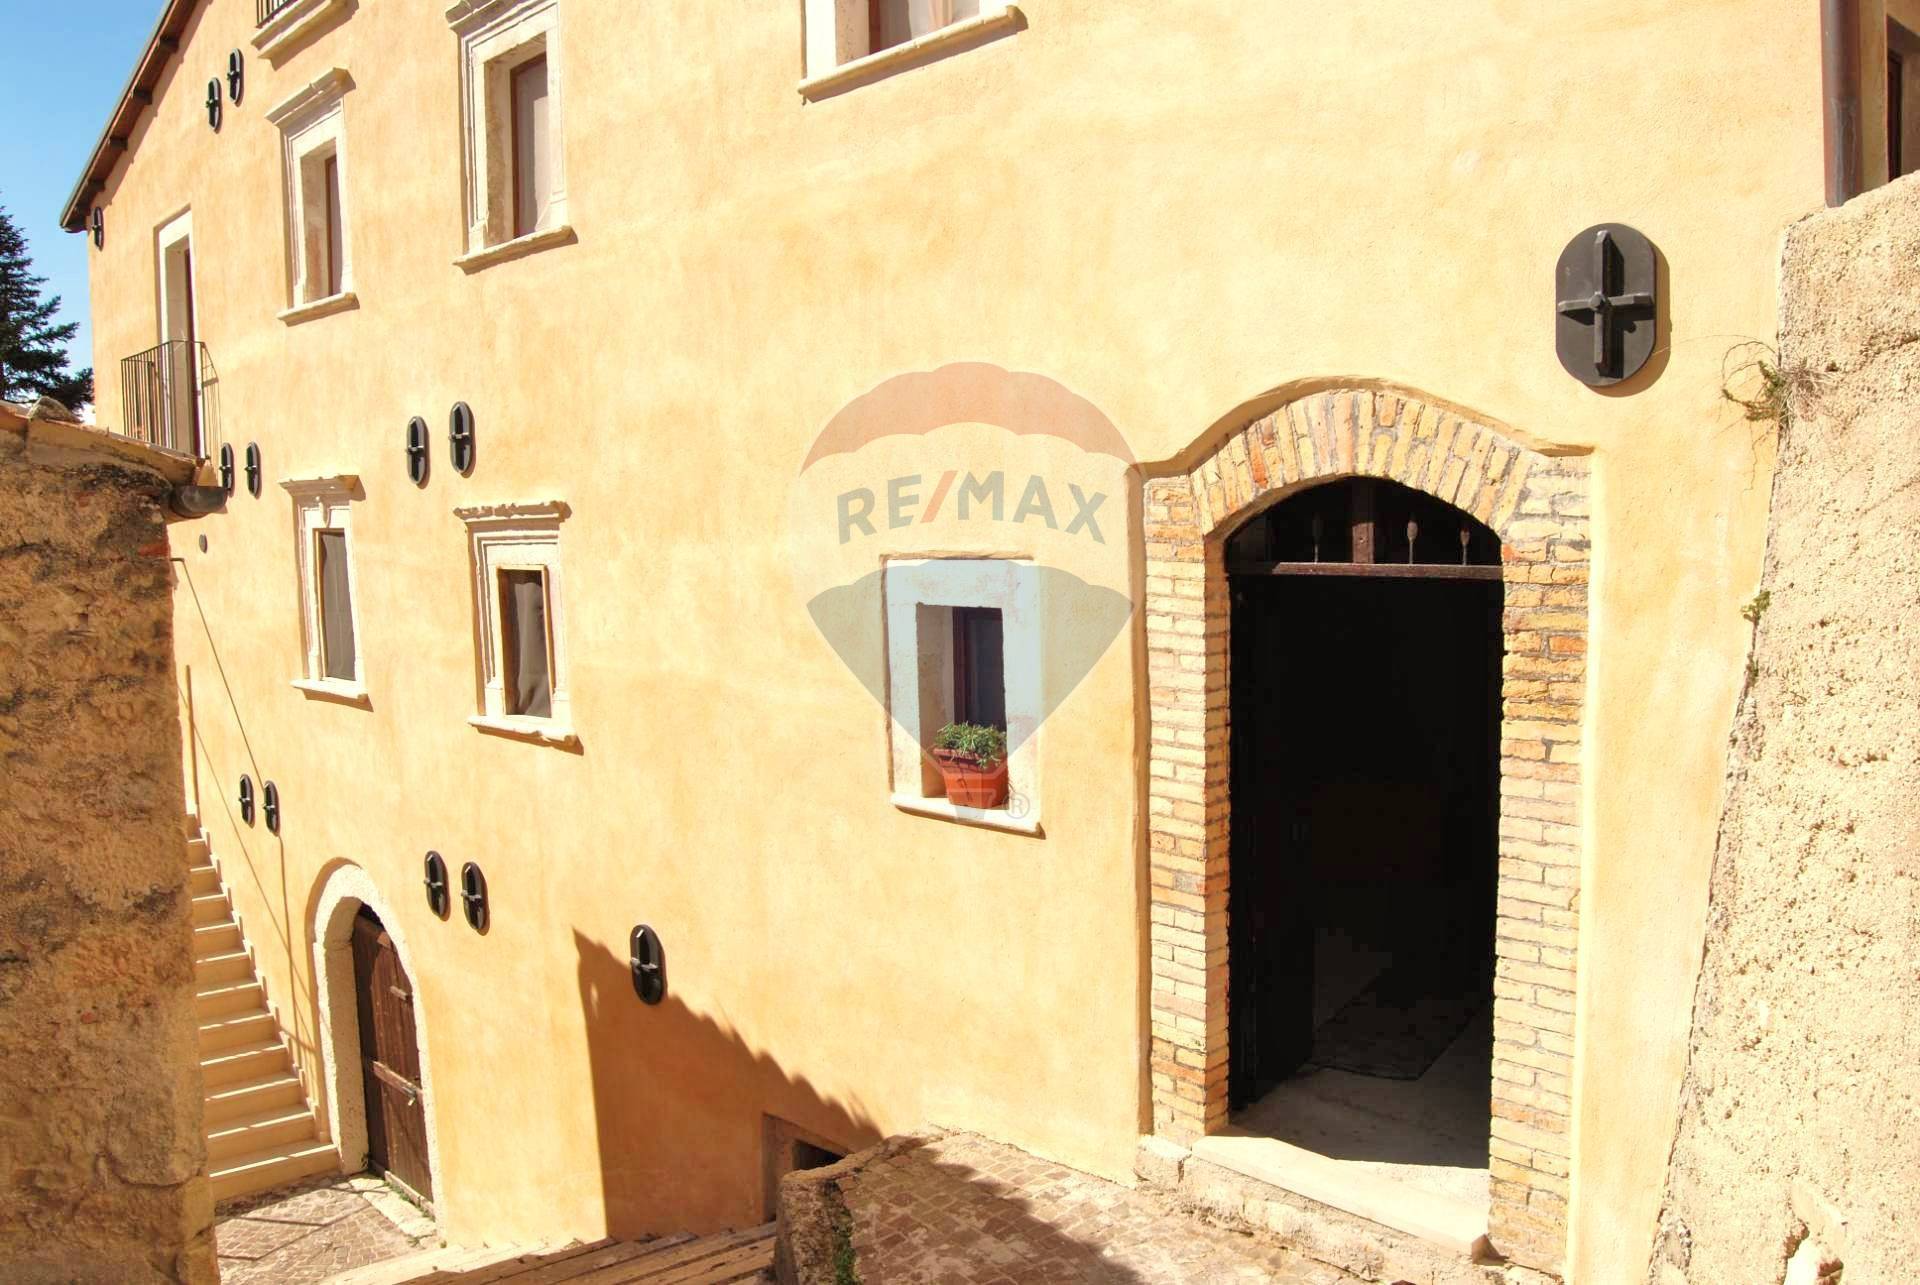 Rustico / Casale in vendita a San Pio delle Camere, 3 locali, prezzo € 11.000 | CambioCasa.it